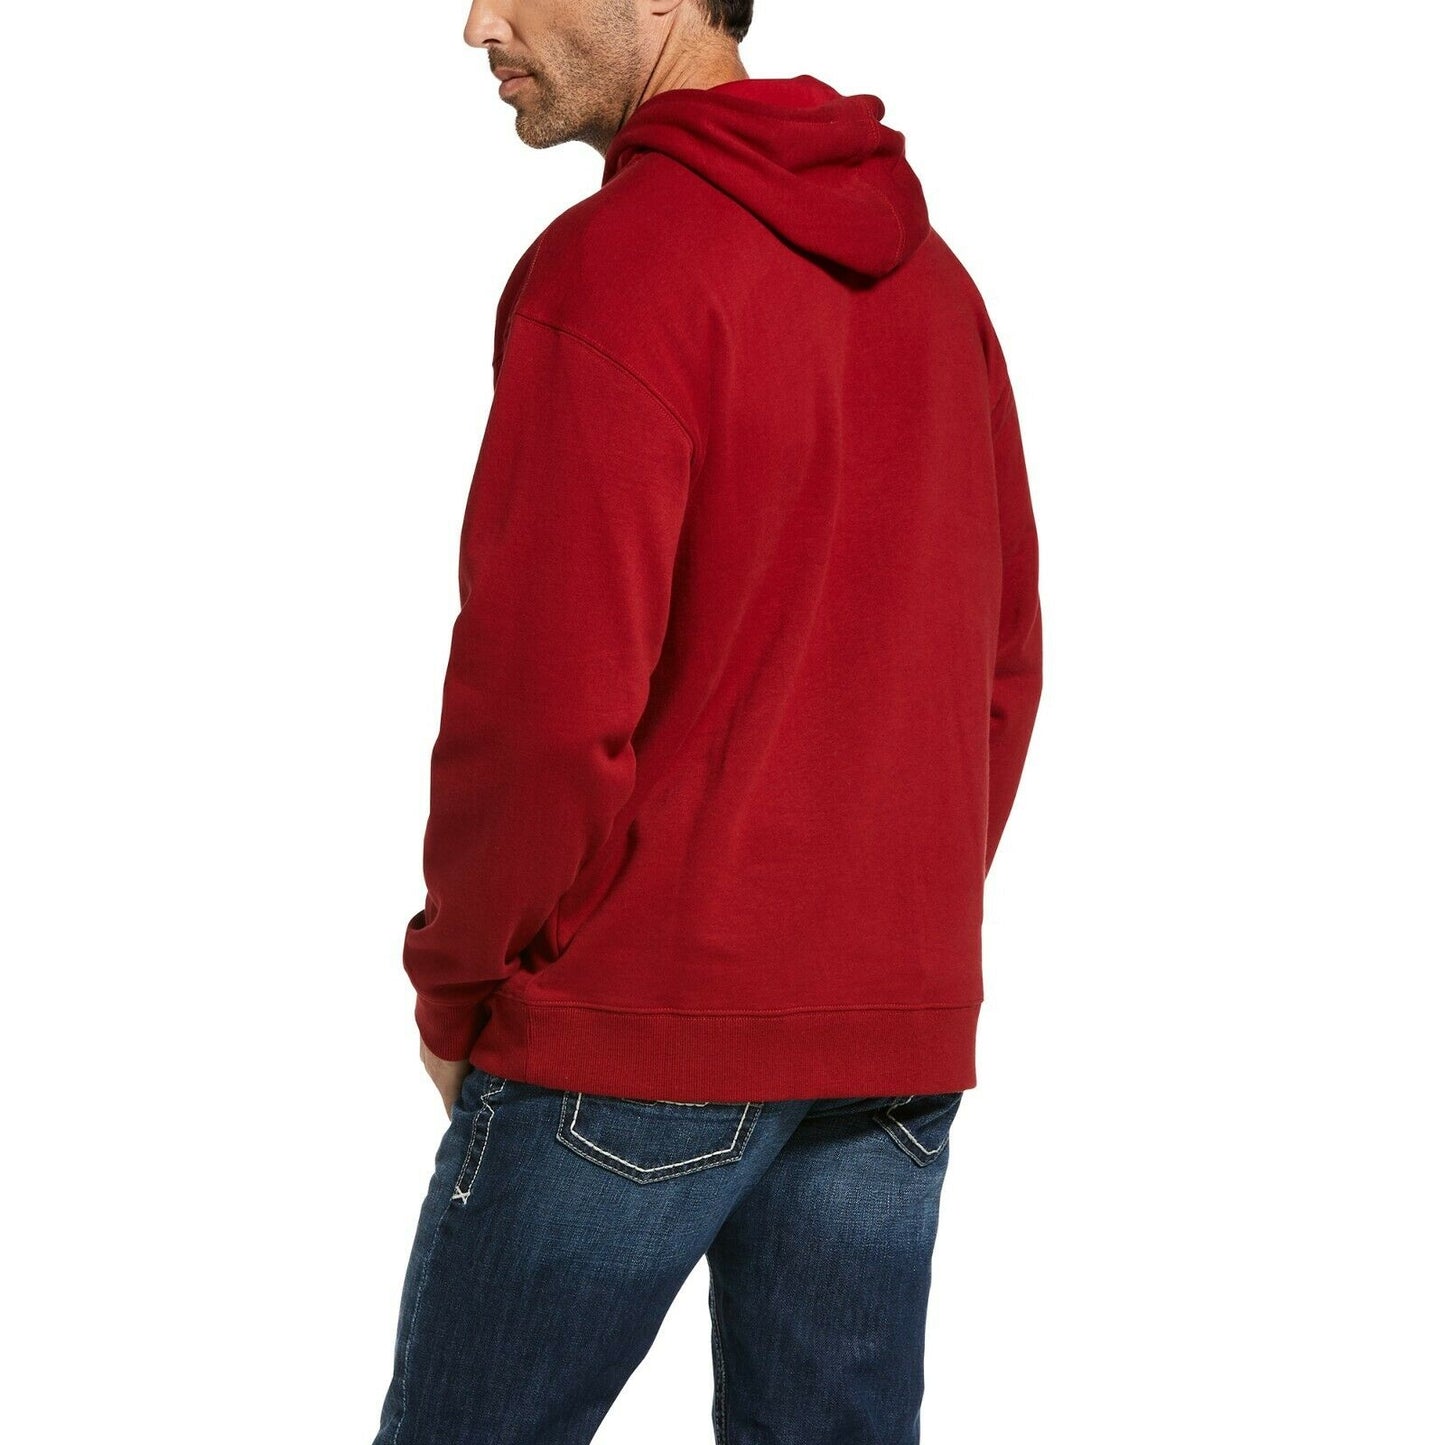 Ariat® Men's Digi Logo Brushed Fleece Red Hoodie 10033149